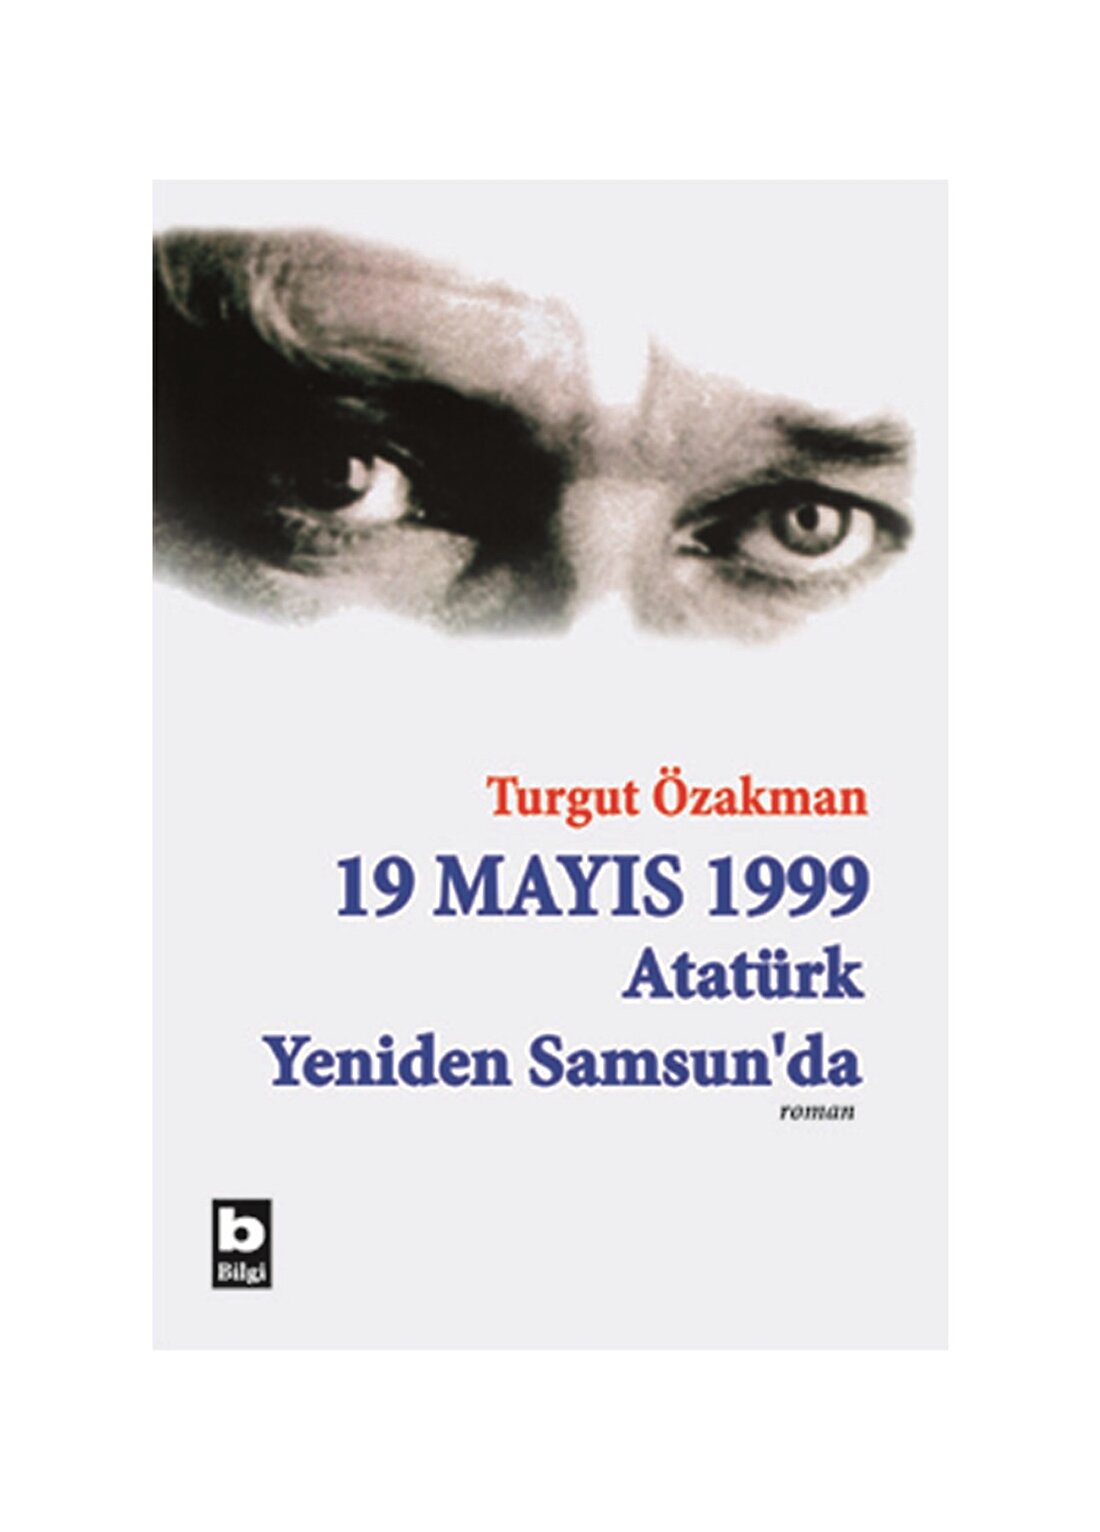 Bilgi Kitap 19 Mayıs 1999 Atatürk Yeniden Sams